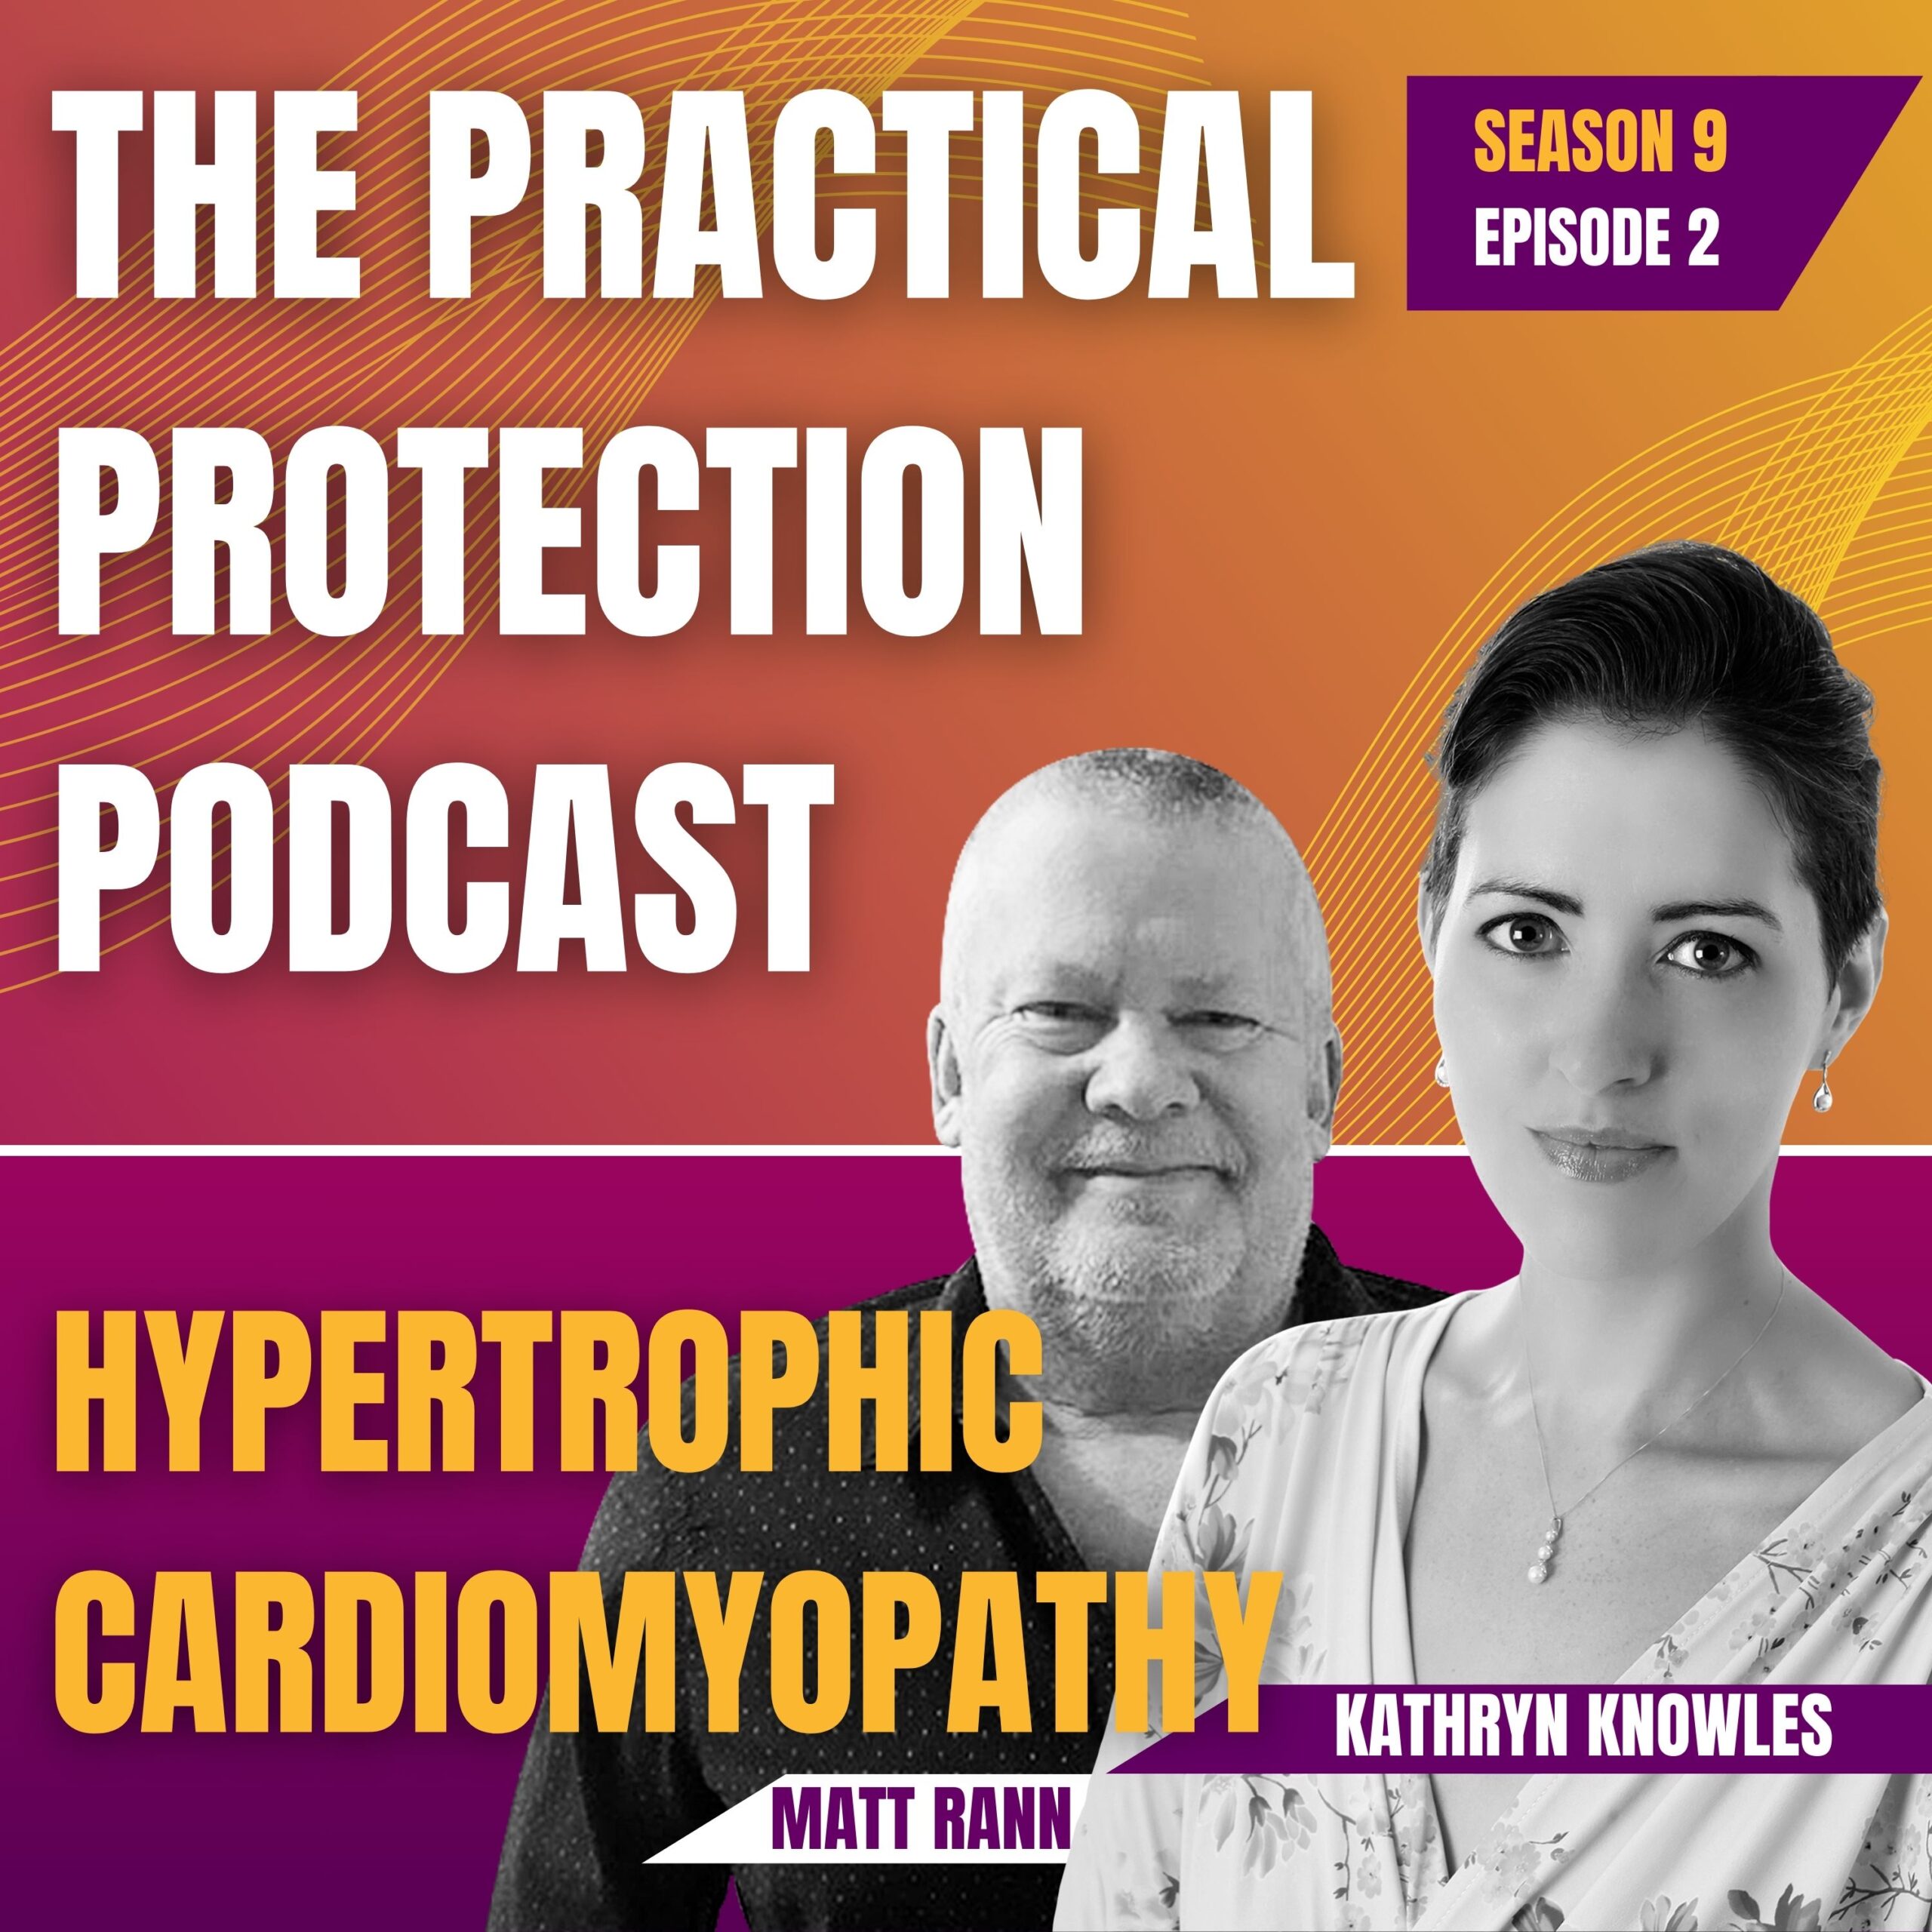 Hypertrophic Cardiomyopathy. Kathryn Knowles and Matt Rann